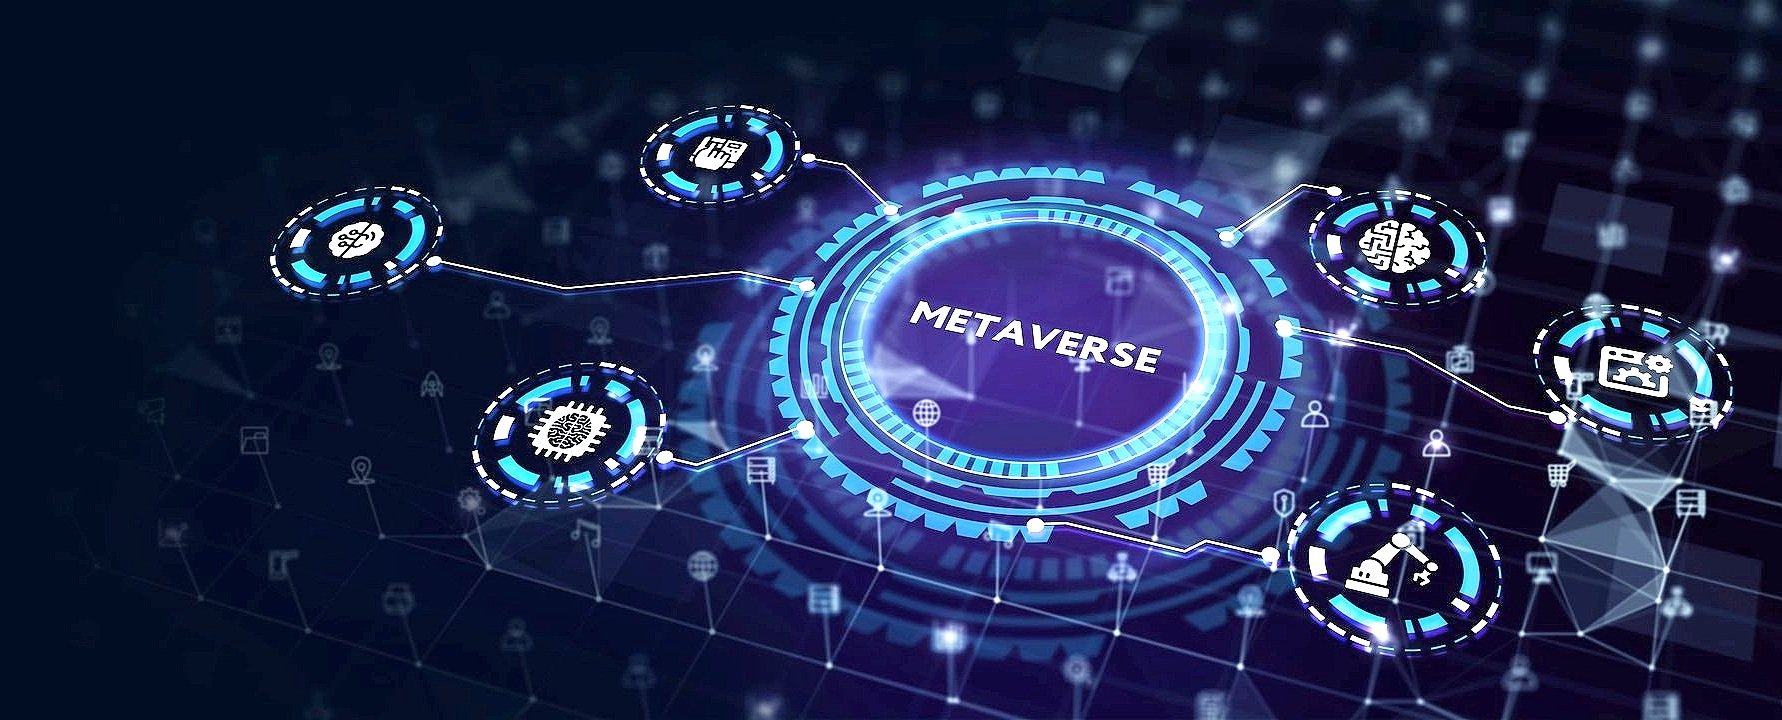 图片展示了以“METAVERSE”为中心的数字图形，周围是代表不同技术和功能的图标，如区块链和社交网络，体现了元宇宙概念。